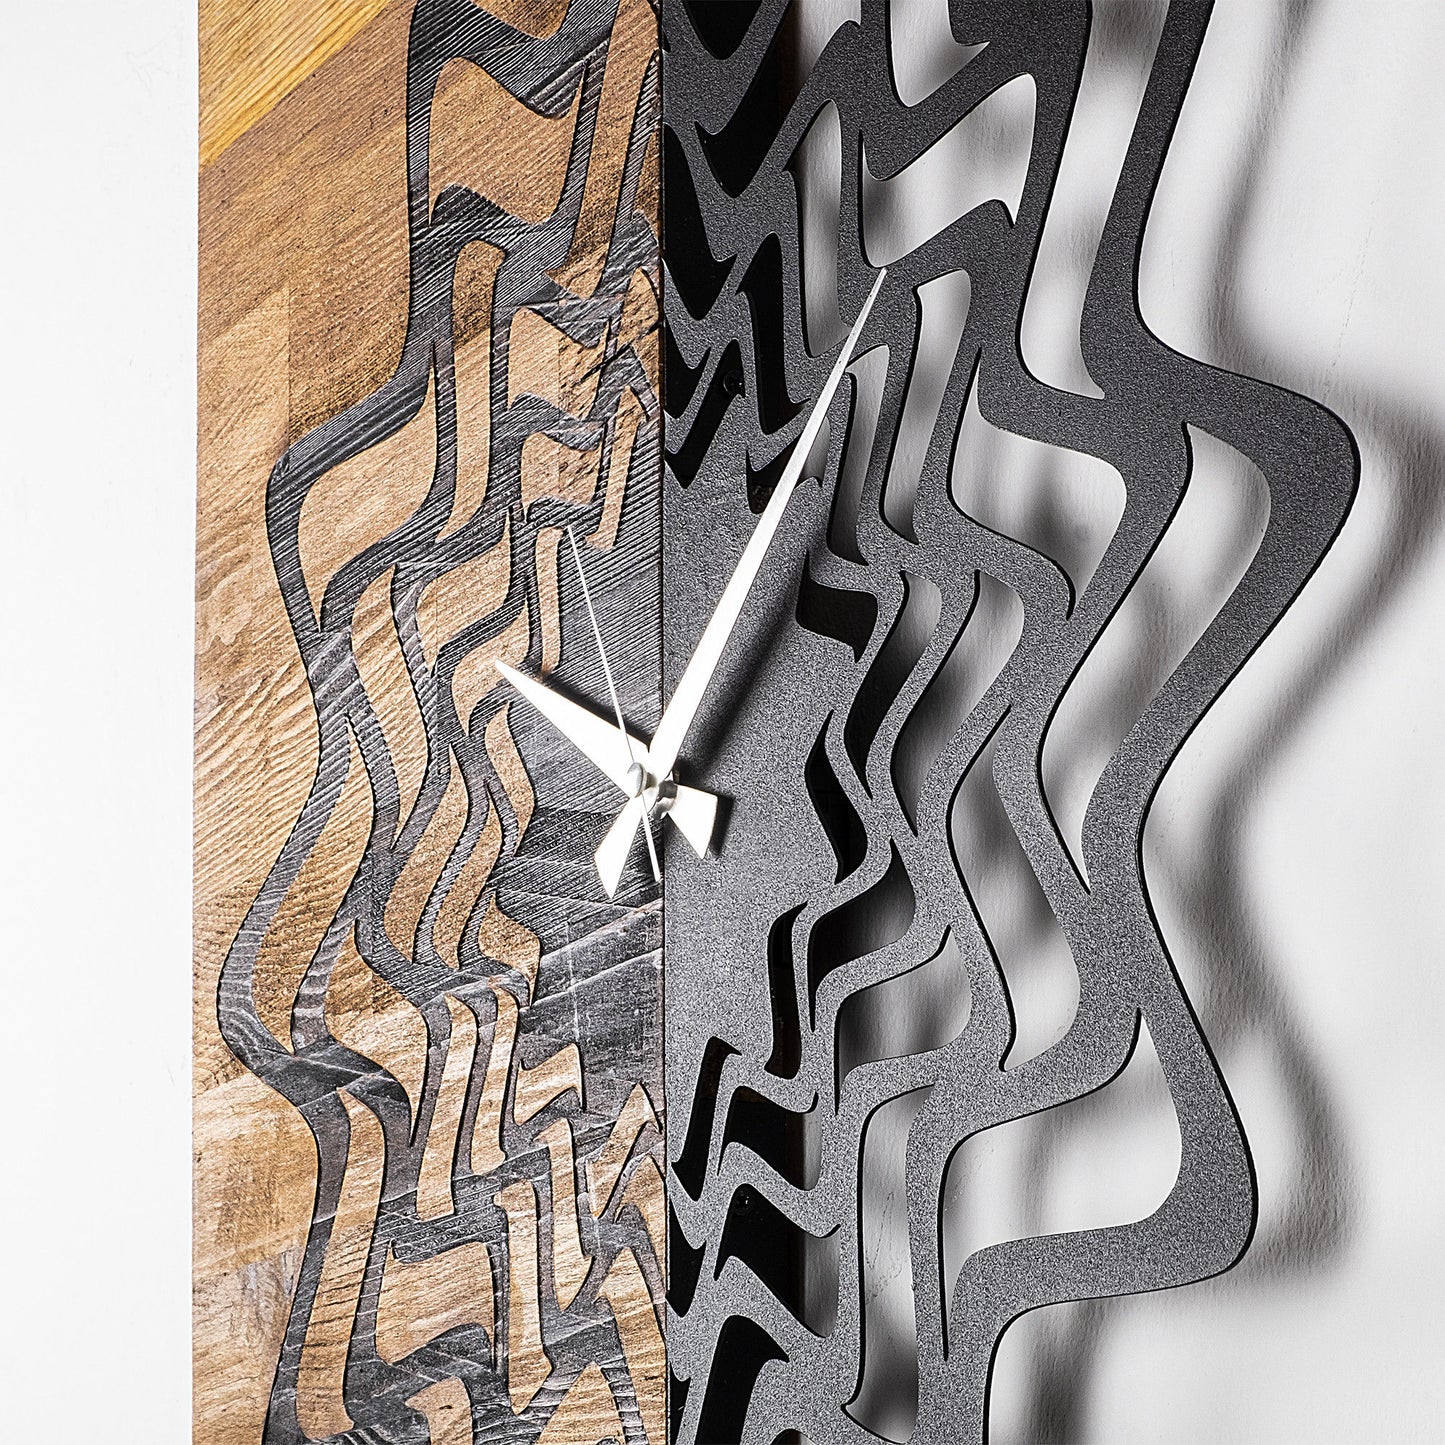 Wooden Clock 21 - Decorative Wooden Wall Clock